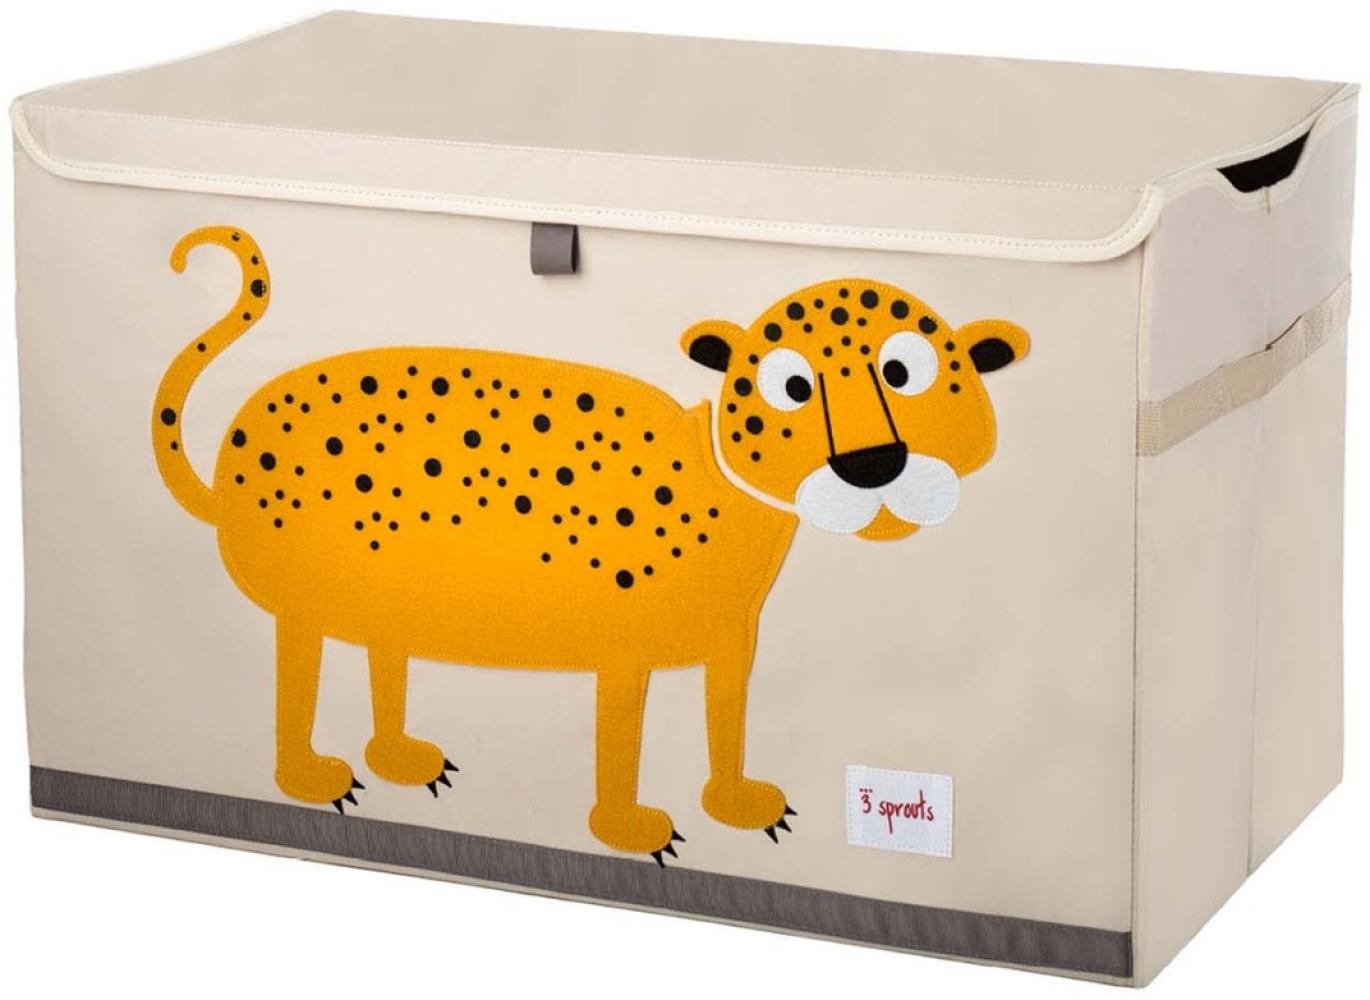 XL Aufbewahrungskiste fürs Kinderzimmer, Leopard, 38 x 61x 37 cm, von 3 sprouts Bild 1